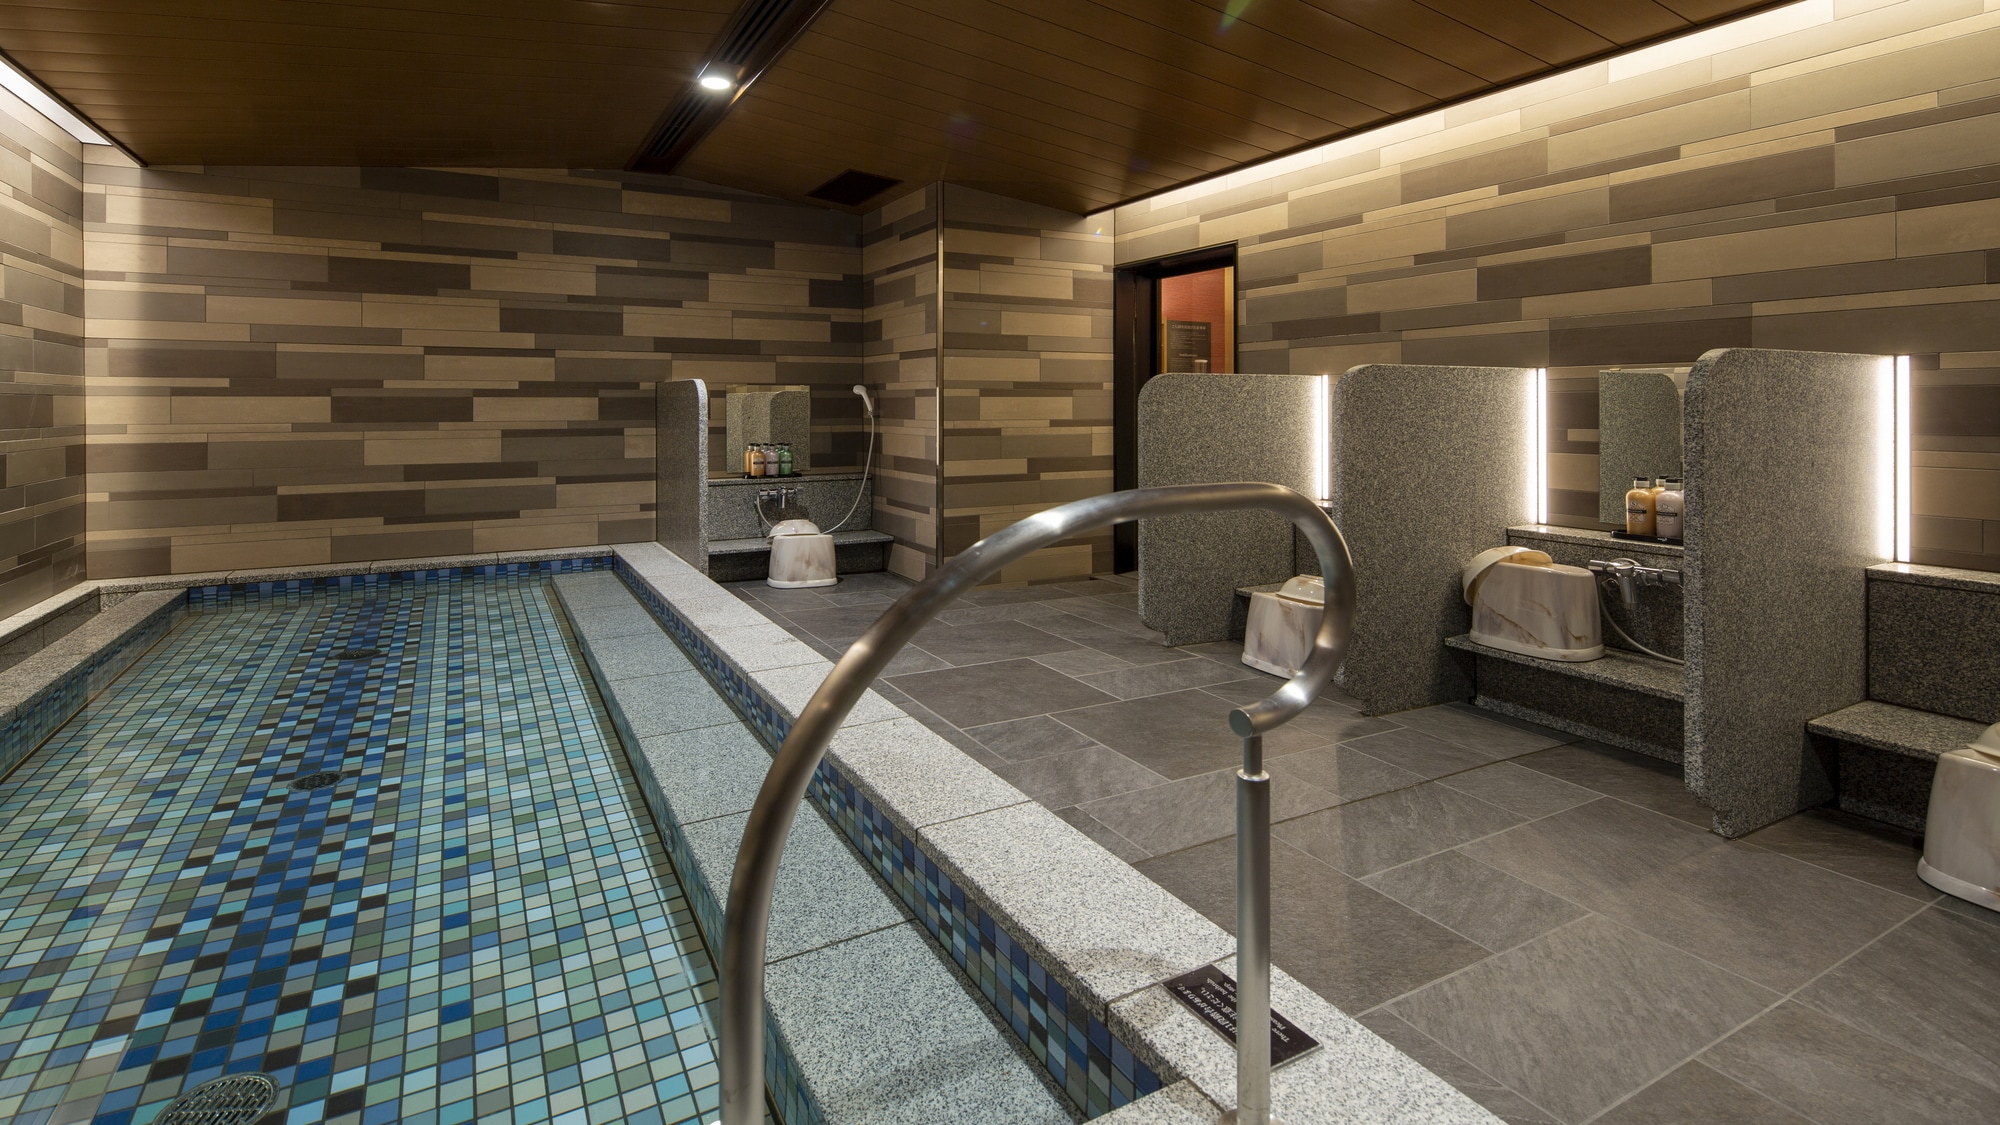 [Fasilitas di gedung] "Trinite", fasilitas pemandian air panas dengan sauna